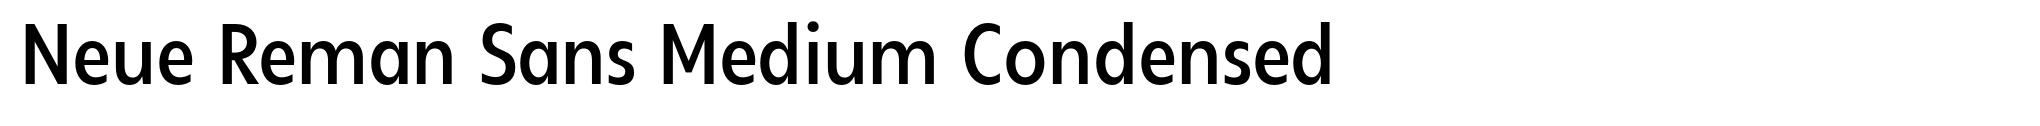 Neue Reman Sans Medium Condensed image